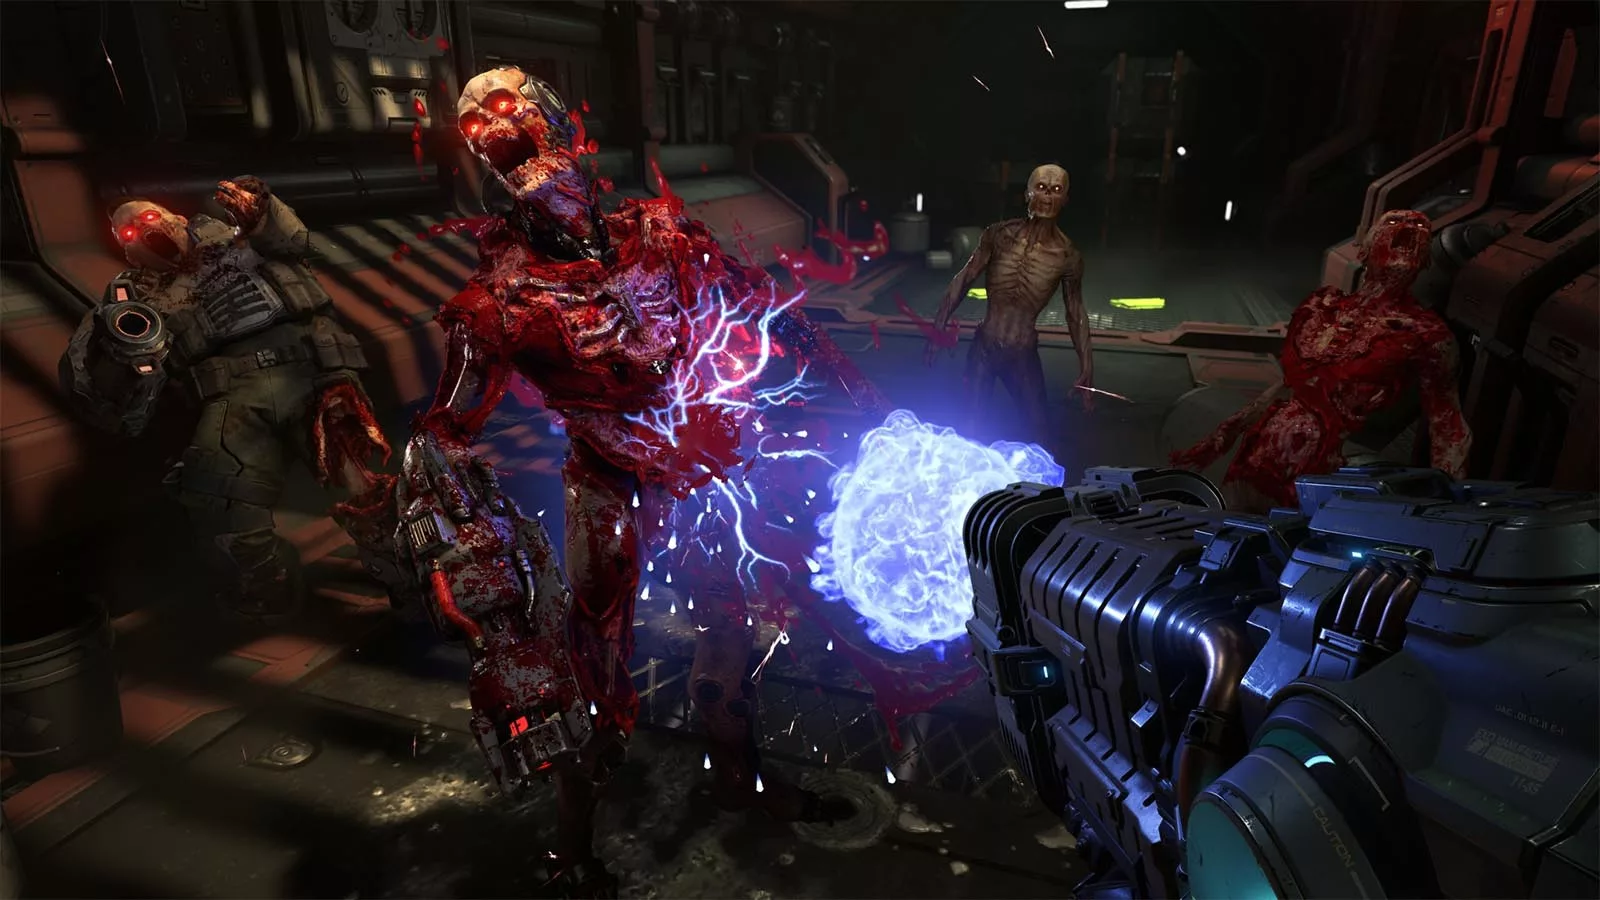 Скриншот из видеоигры, на котором в демона стреляют из большой пушки голубой энергией